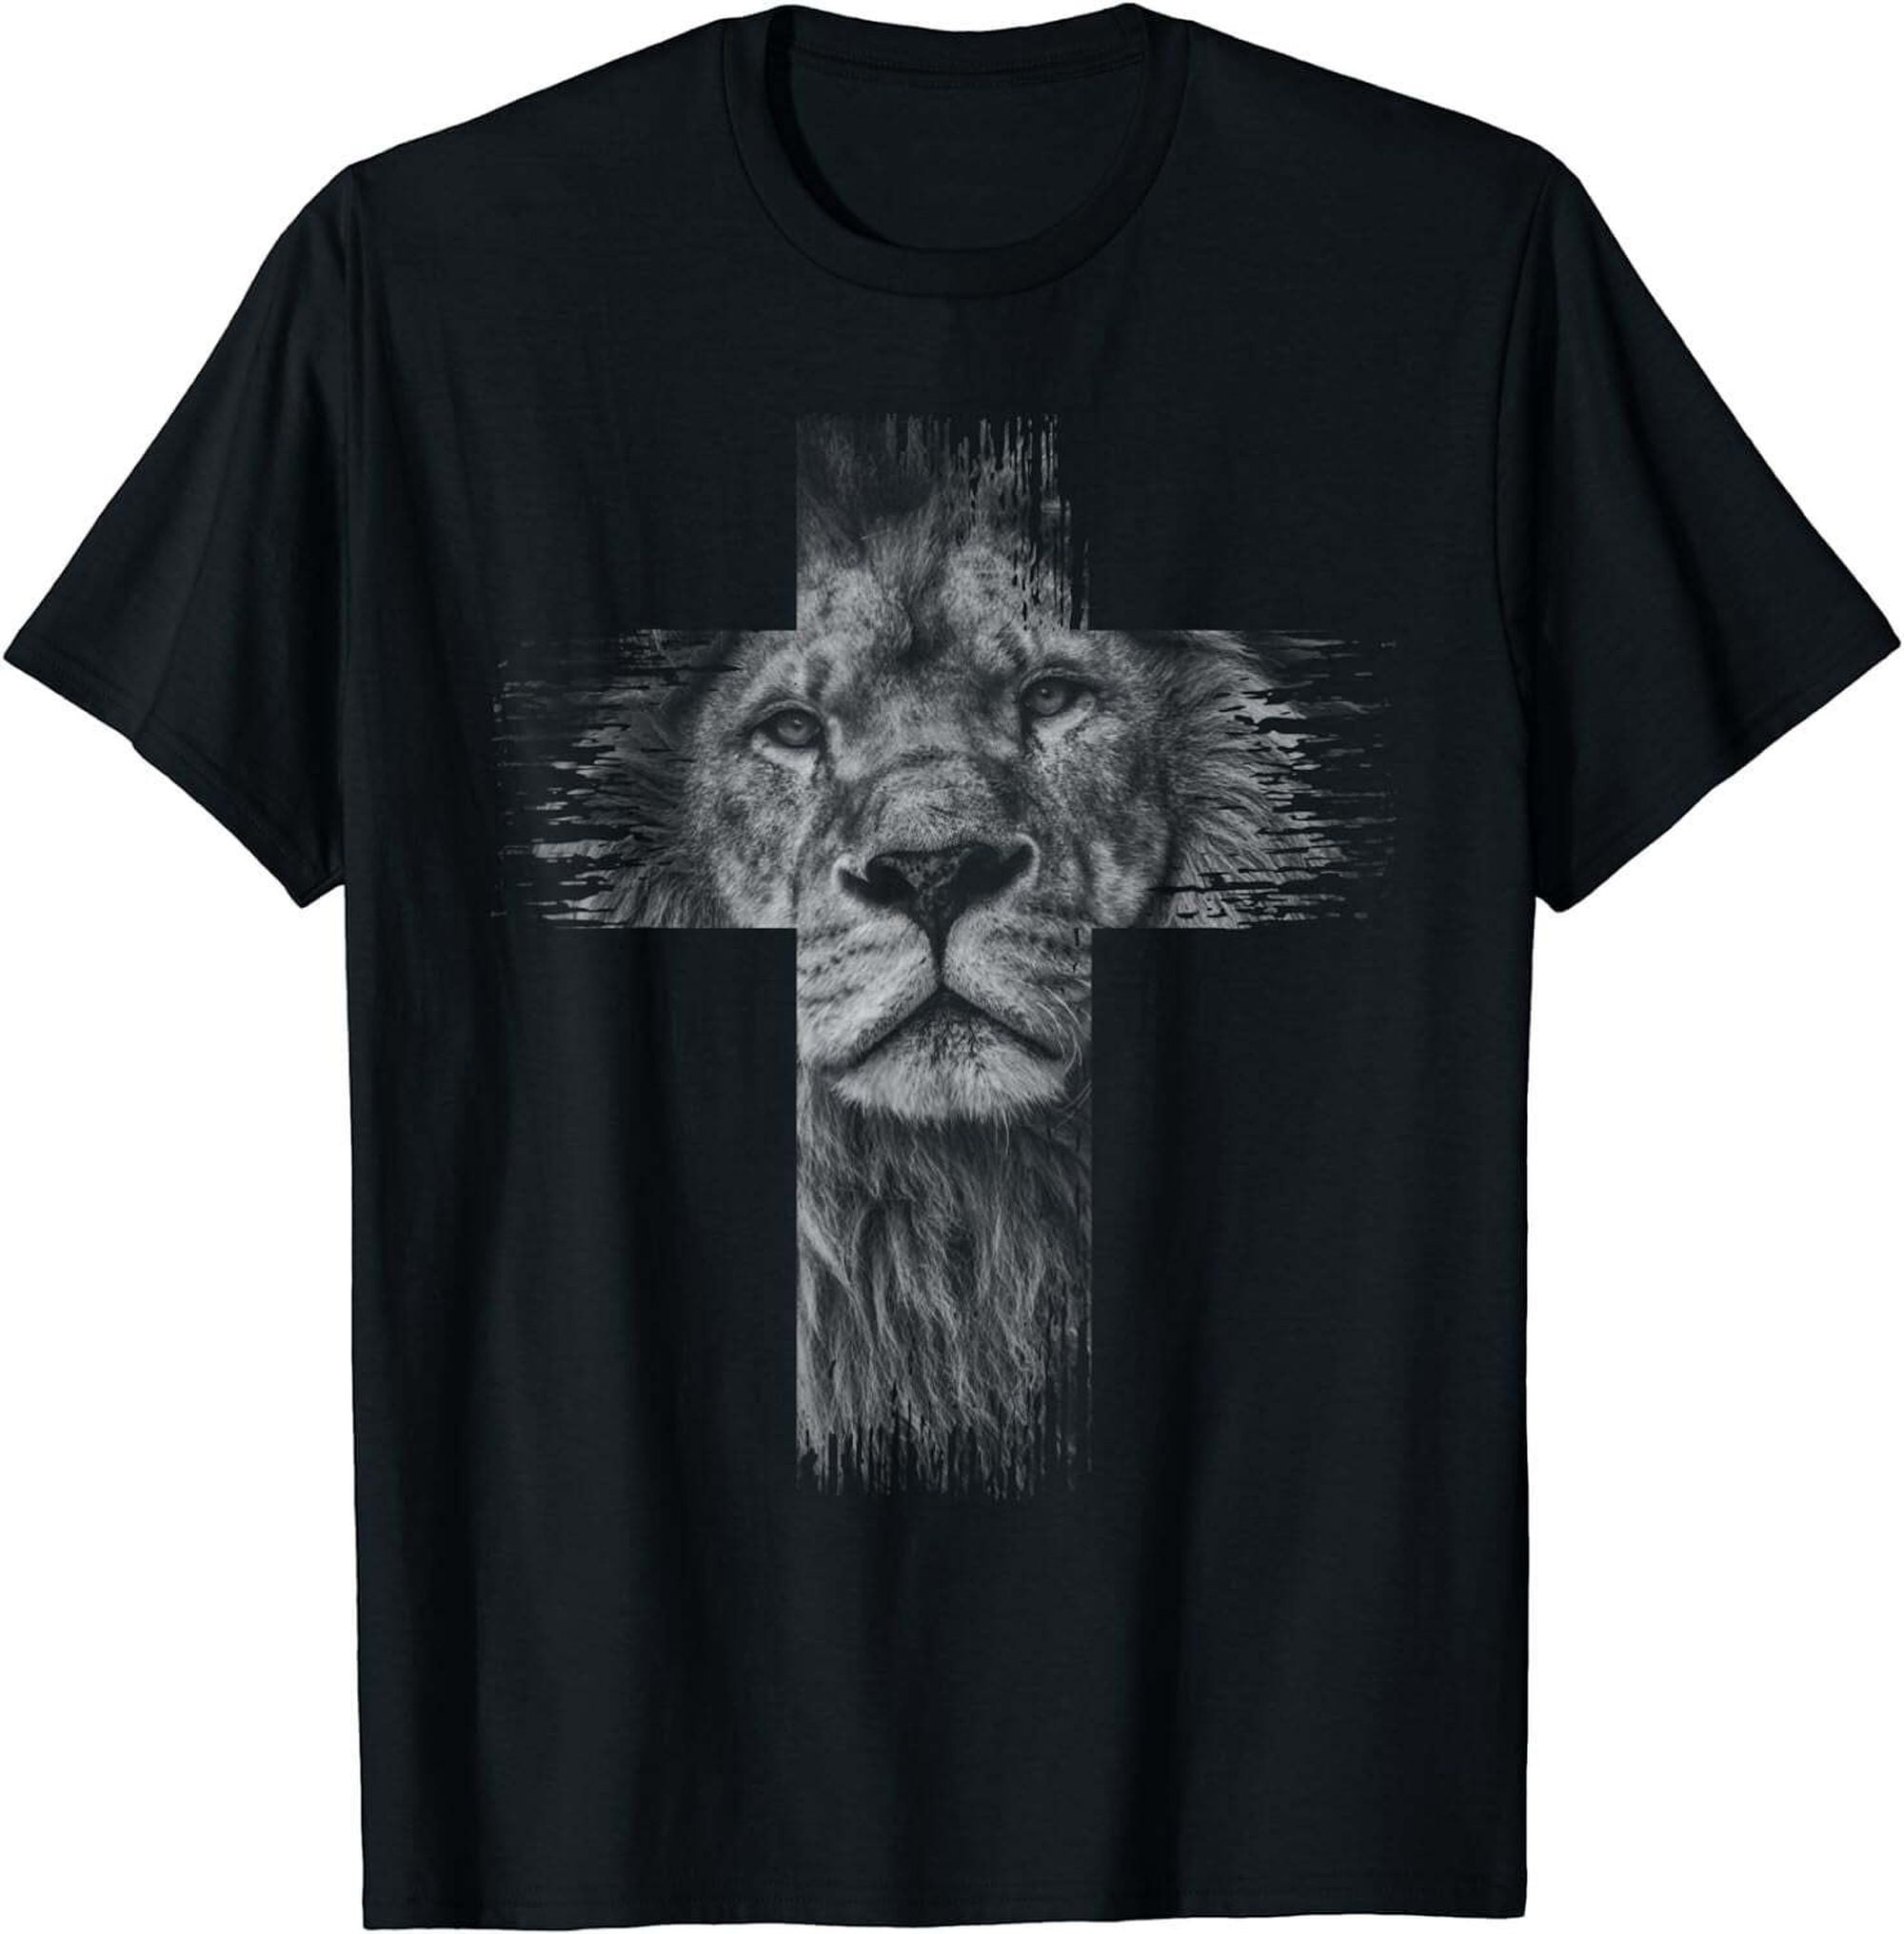 Proclaim Your Faith with the Lion of Judah Christian Cross T-Shirt ...